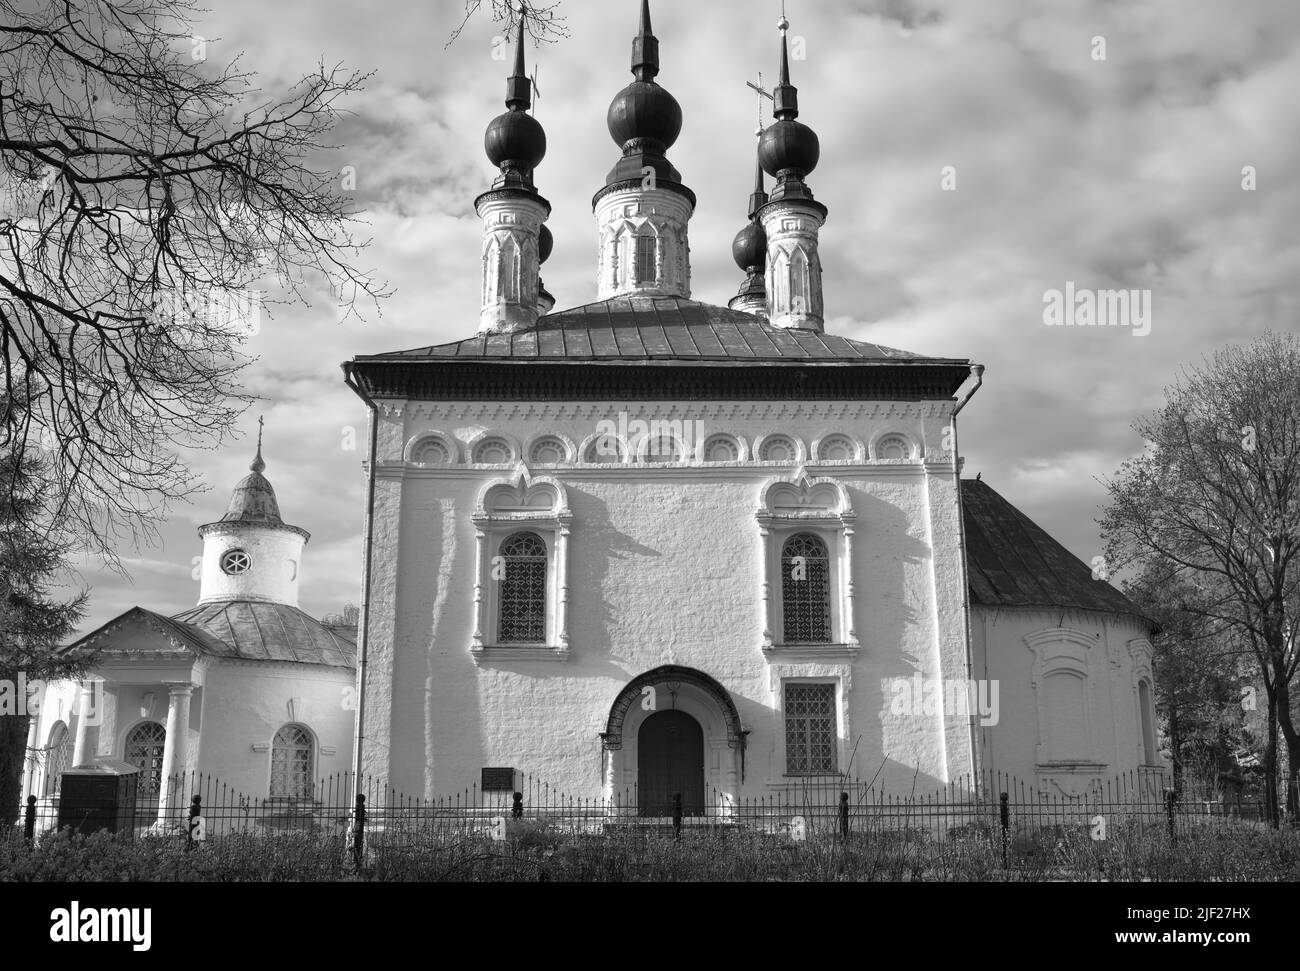 Le Temple de Constantine le Tsar à Suzdal. Église en pierre blanche de l'architecture russe du XVIIIe siècle. Russie, 2022 Banque D'Images